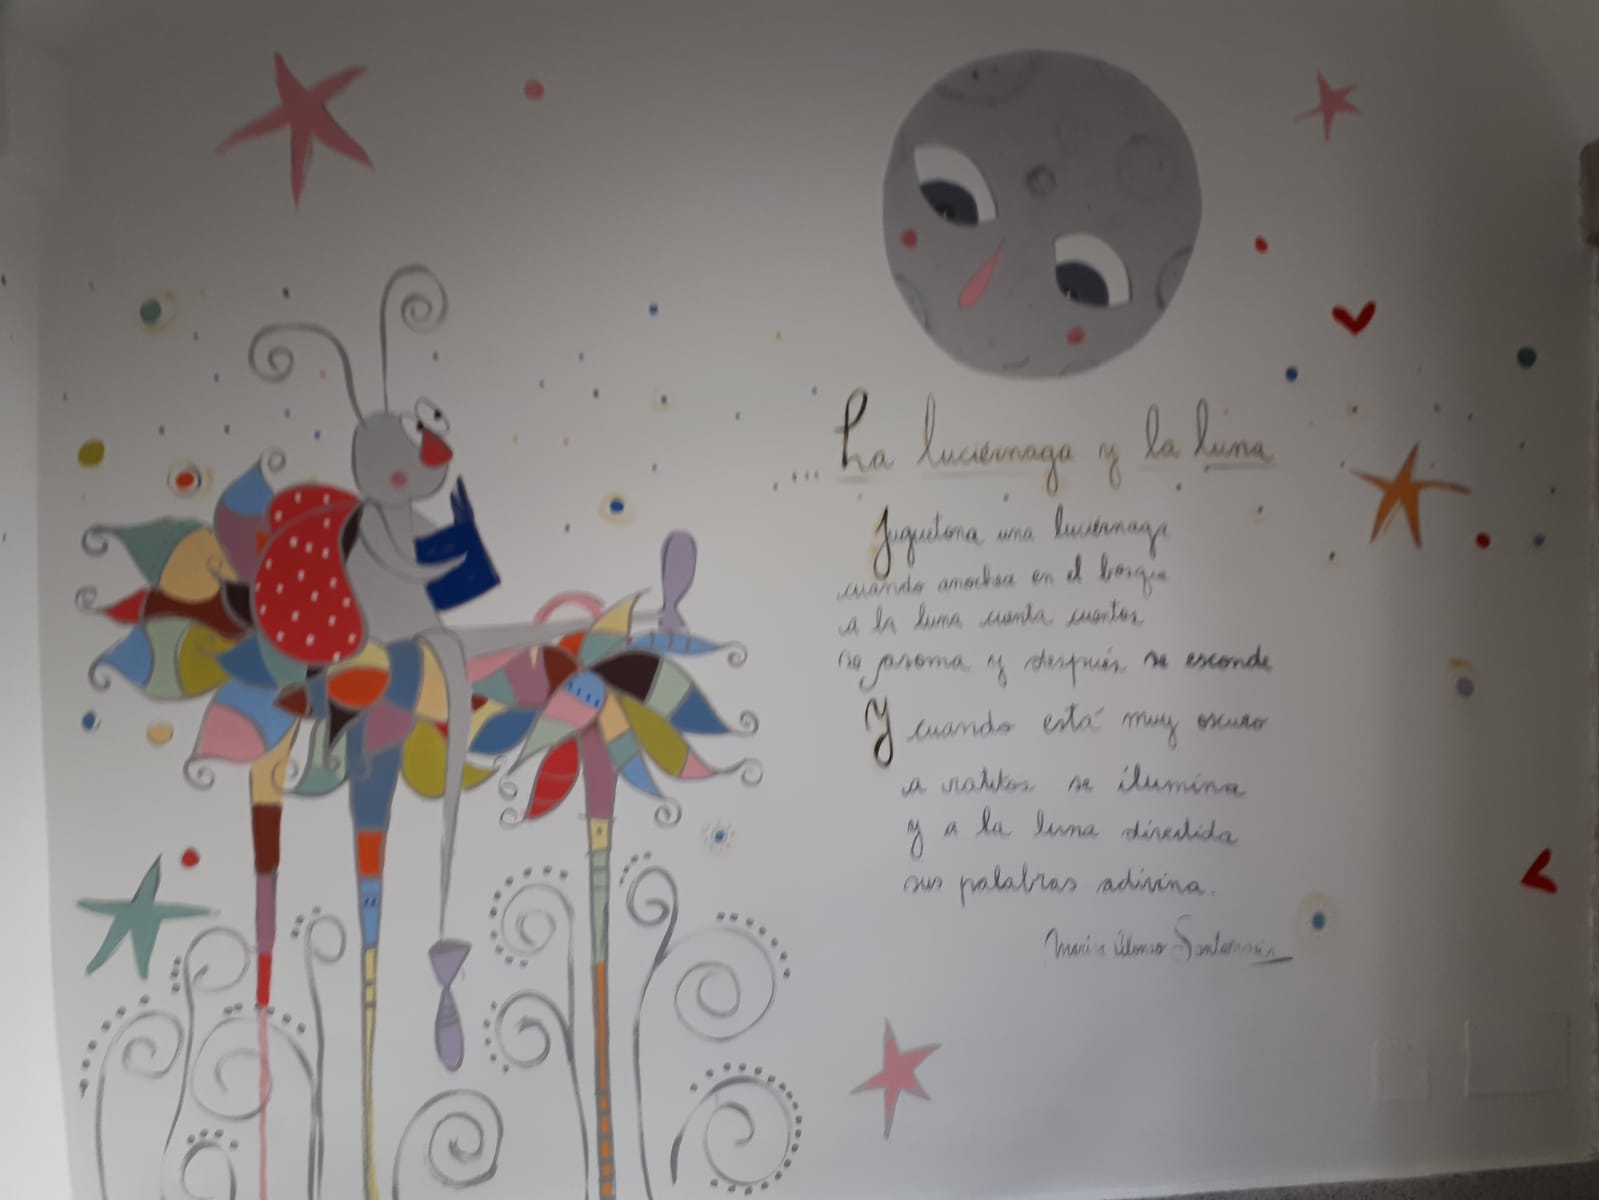 Mural Elizabeth Aguillón con La Luciérnaga y la luna